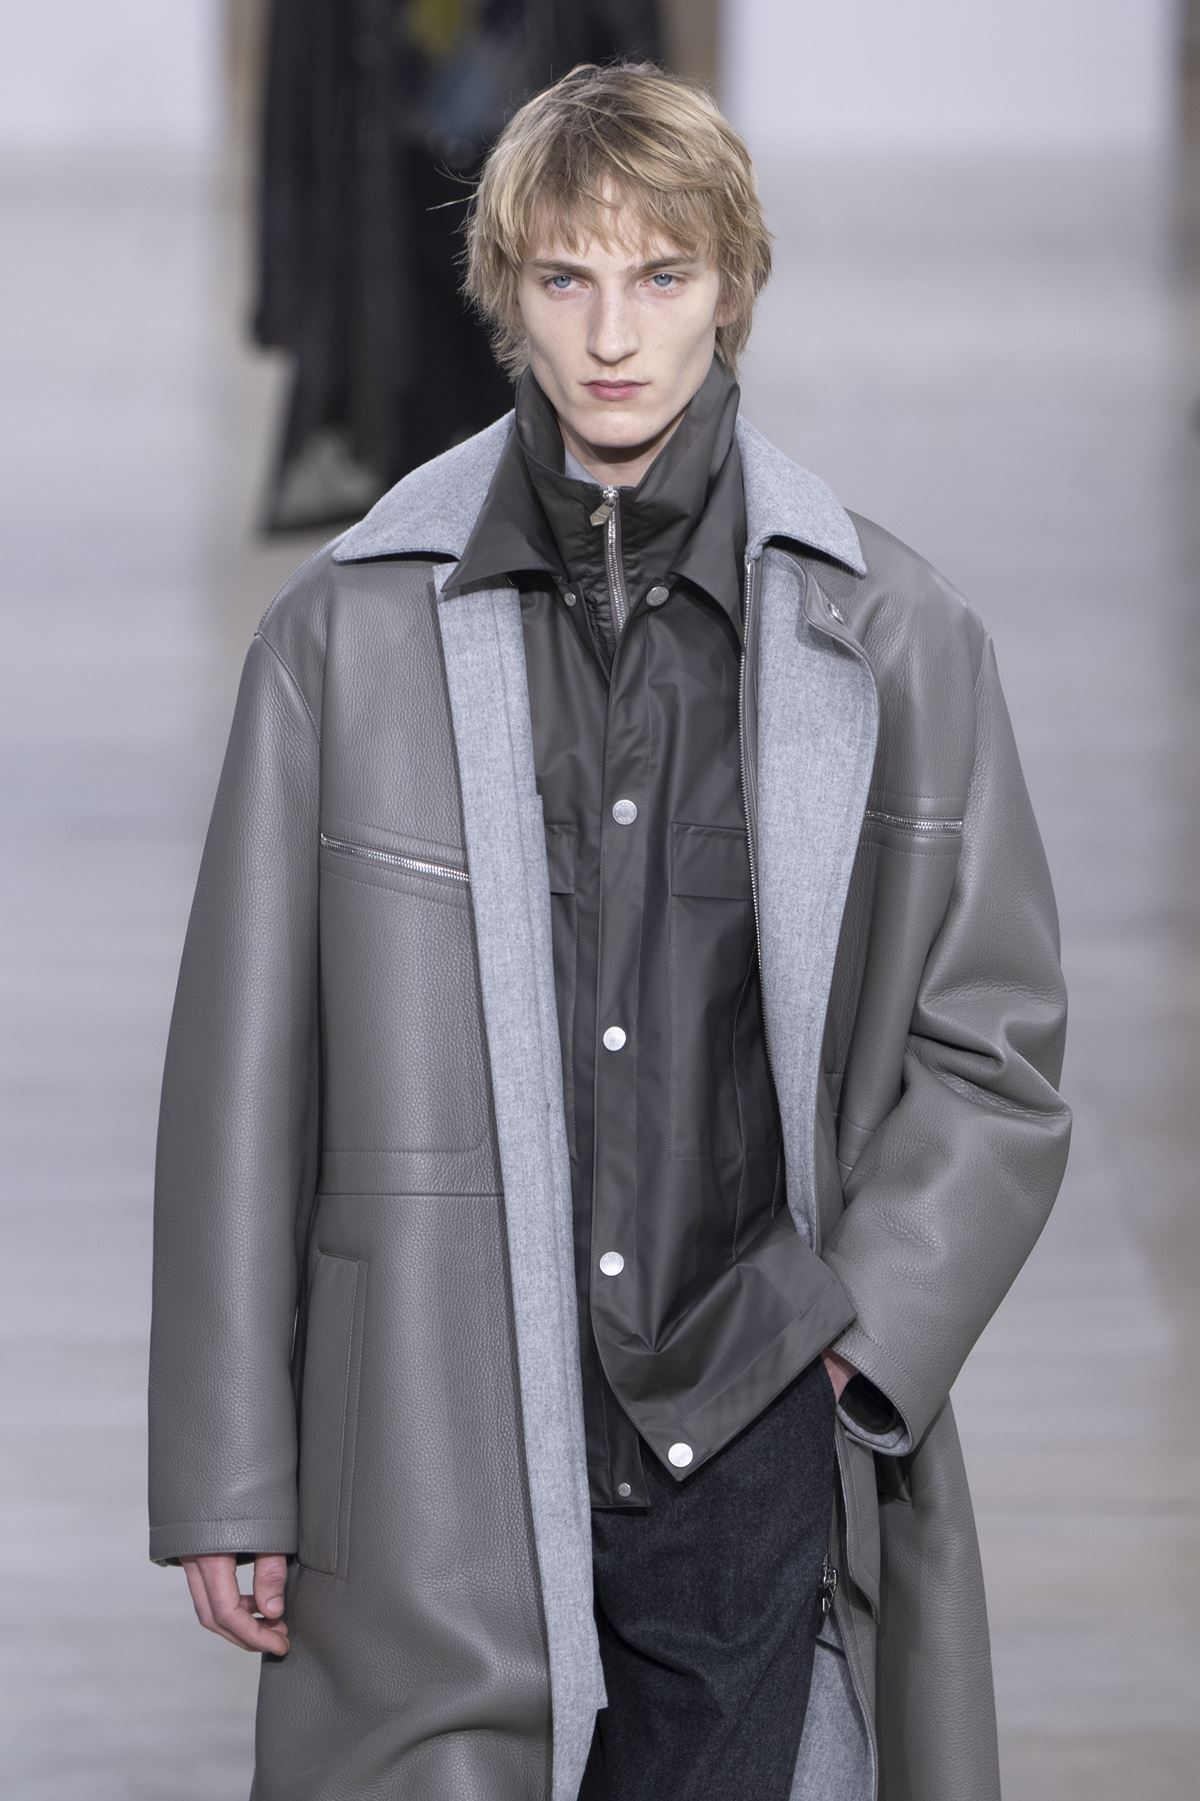 Hermes moda masculina casaco cinza - metrópoles